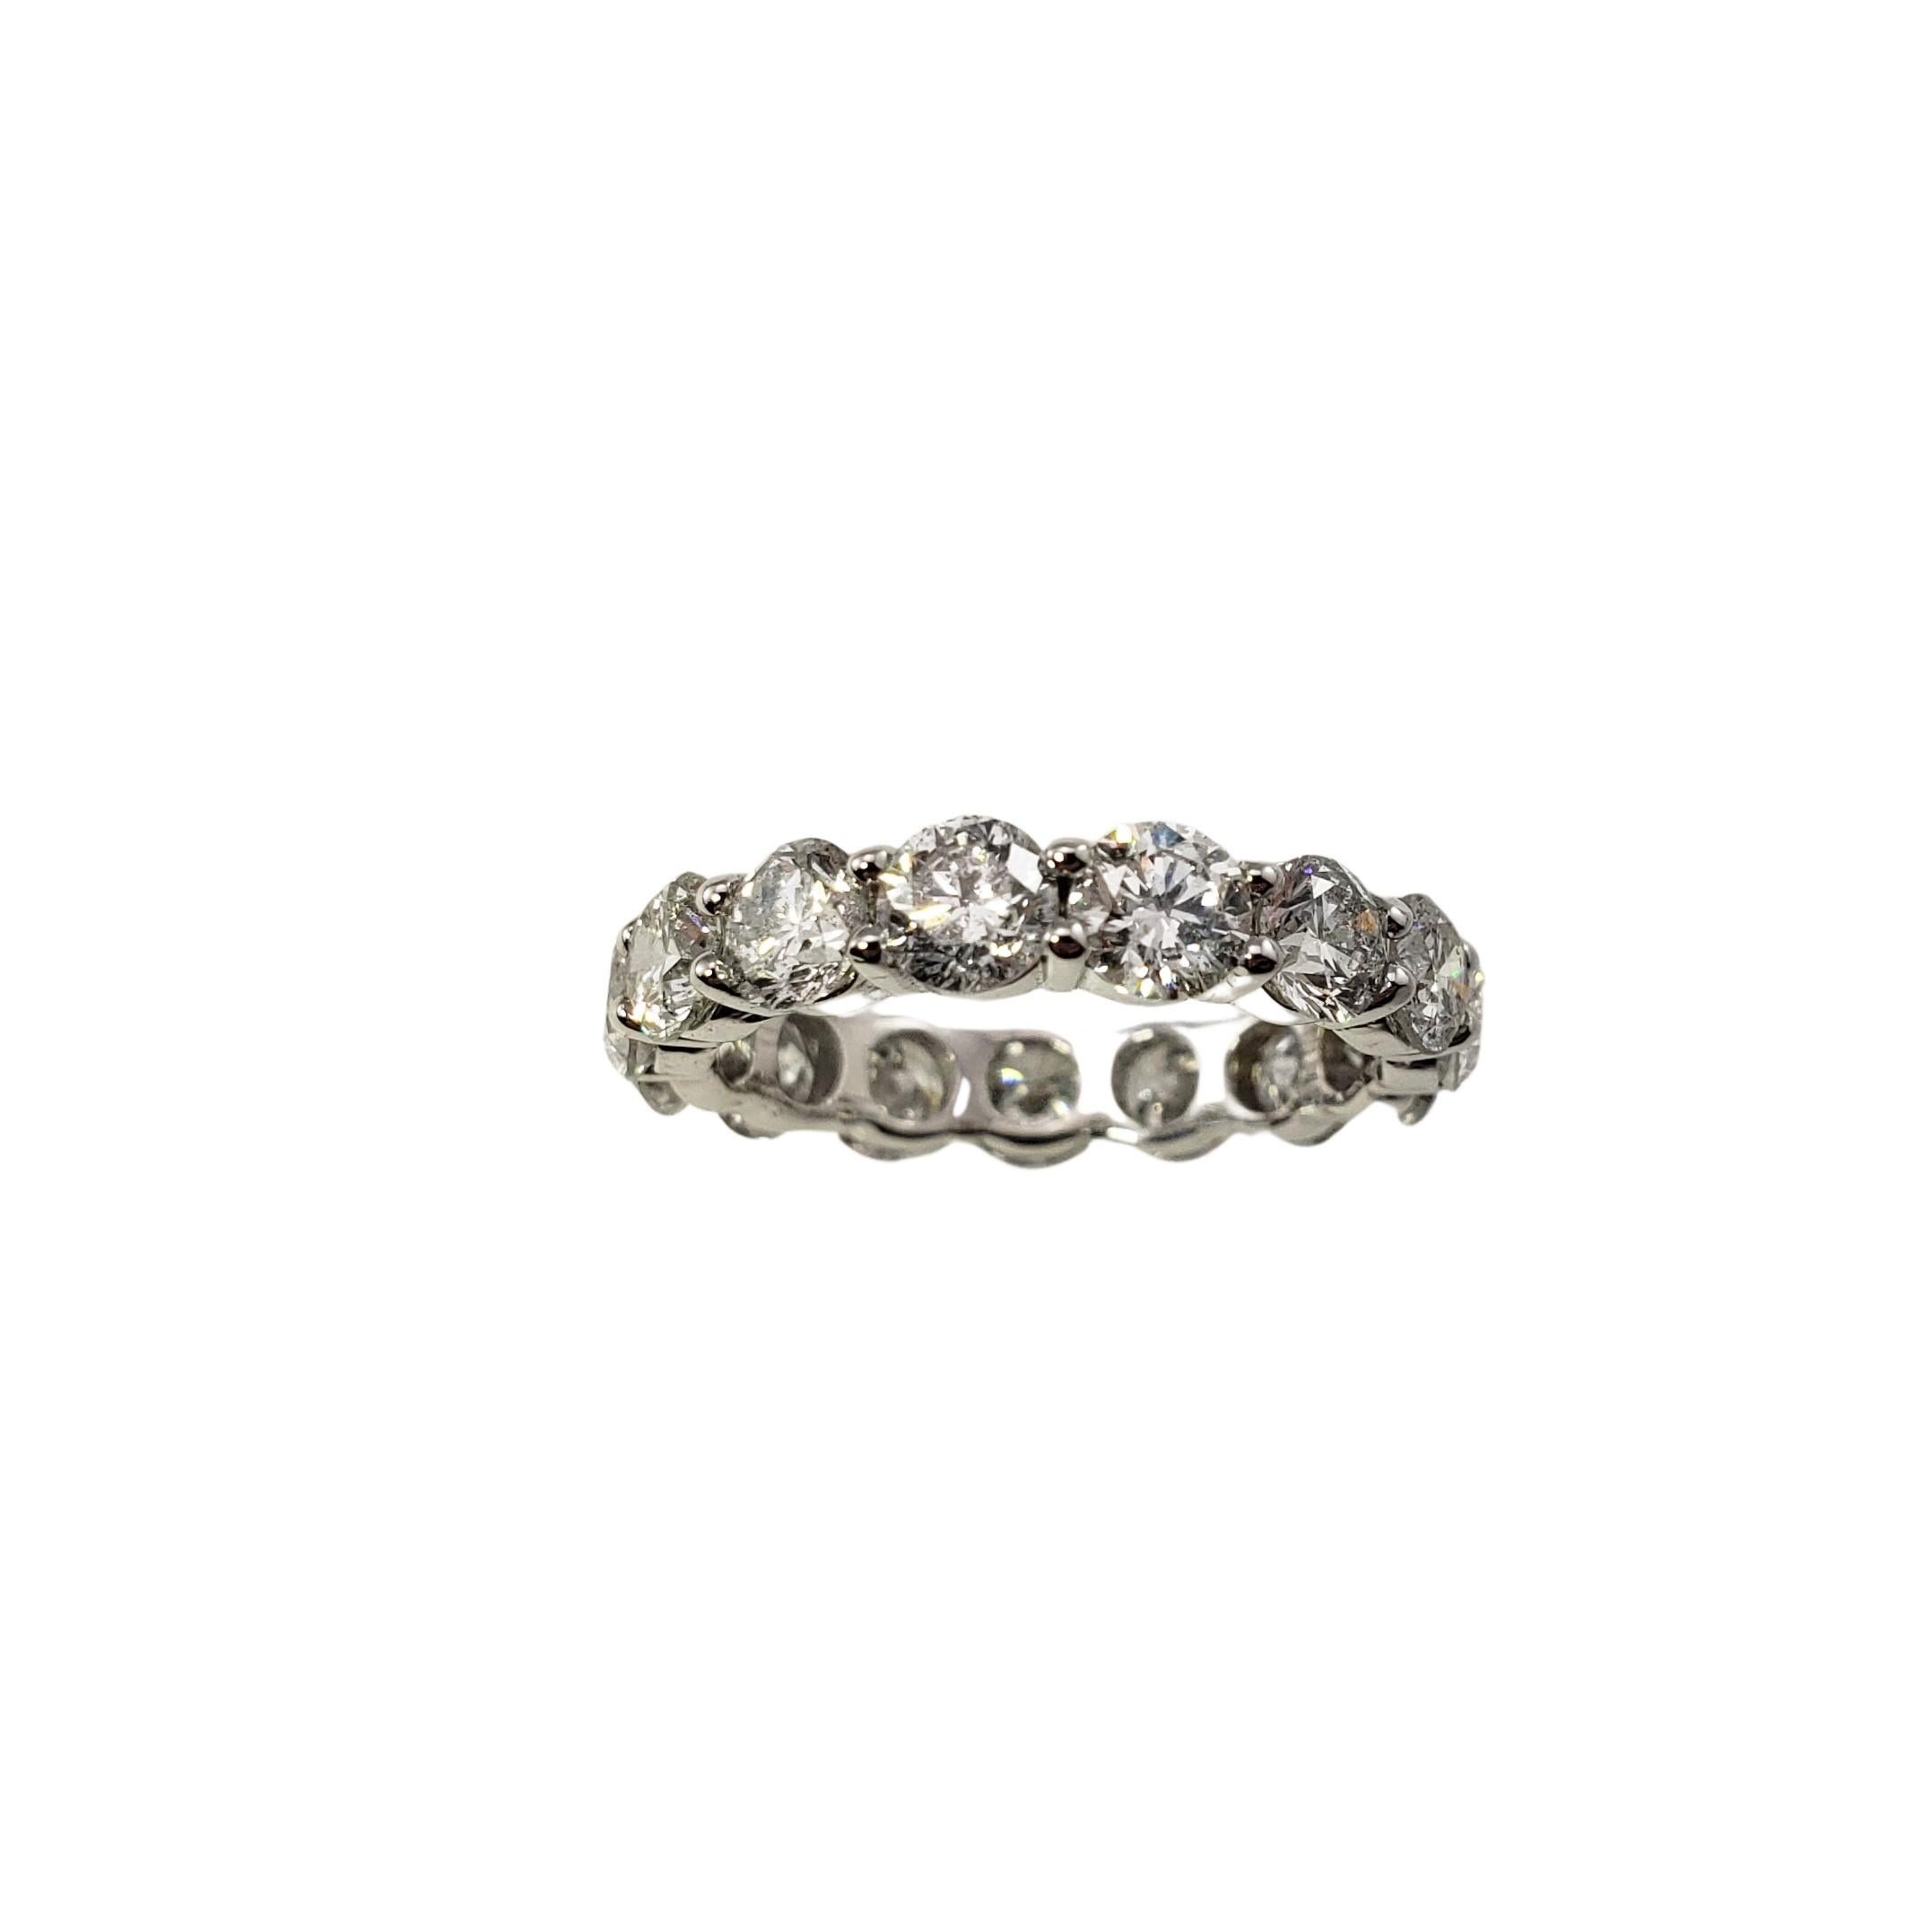 Vintage 18 Karat Weißgold Diamant Eternity Band Ring Größe 6-

Dieses funkelnde Ewigkeitsband ist mit 15 runden Diamanten im Brillantschliff besetzt, die in klassisches 18 Karat Weißgold gefasst sind.  Breite:  4 mm.

Ungefähres Gesamtgewicht der